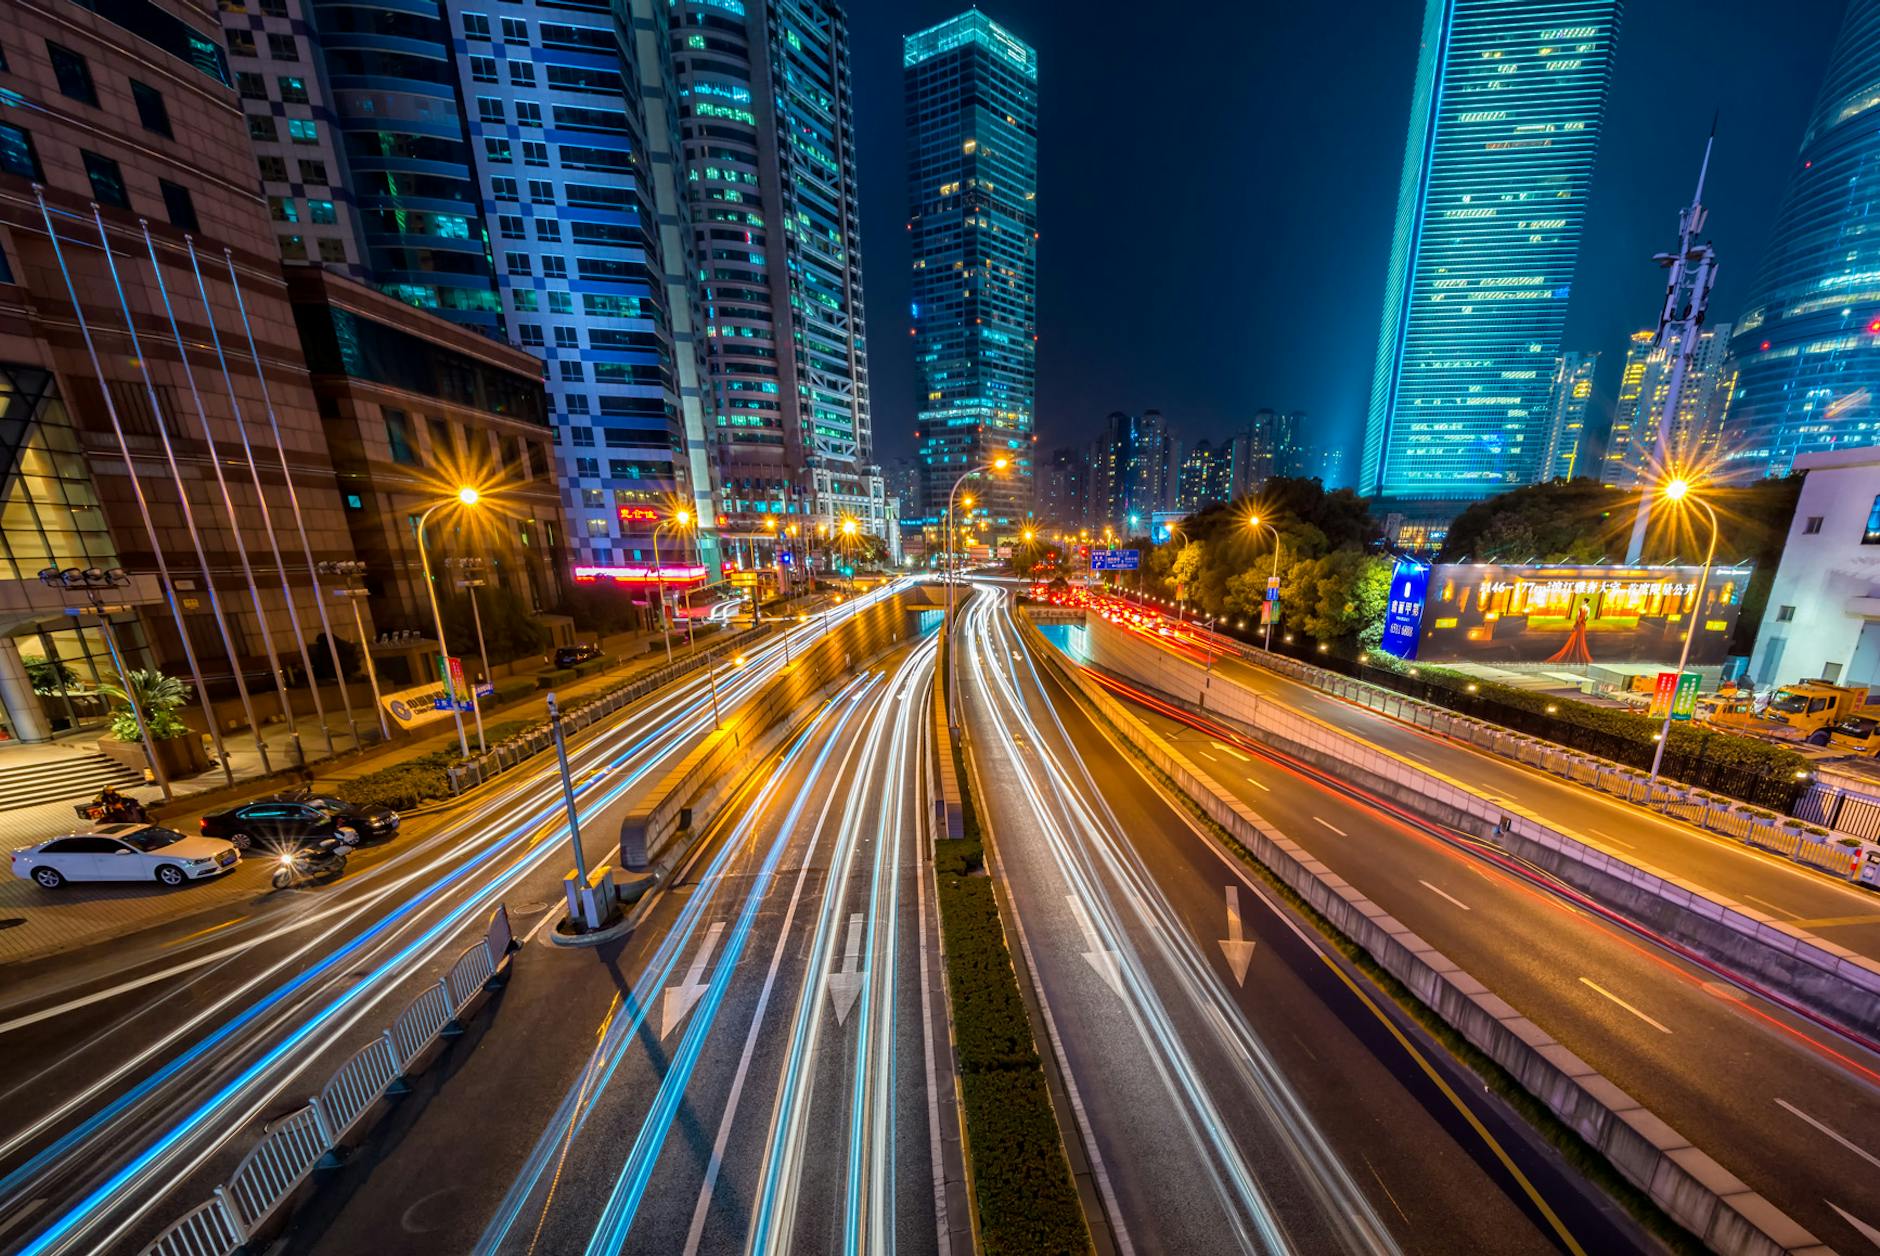 Photographie en accéléré d’un véhicule sur une route en béton près d’un immeuble de grande hauteur pendant la nuit